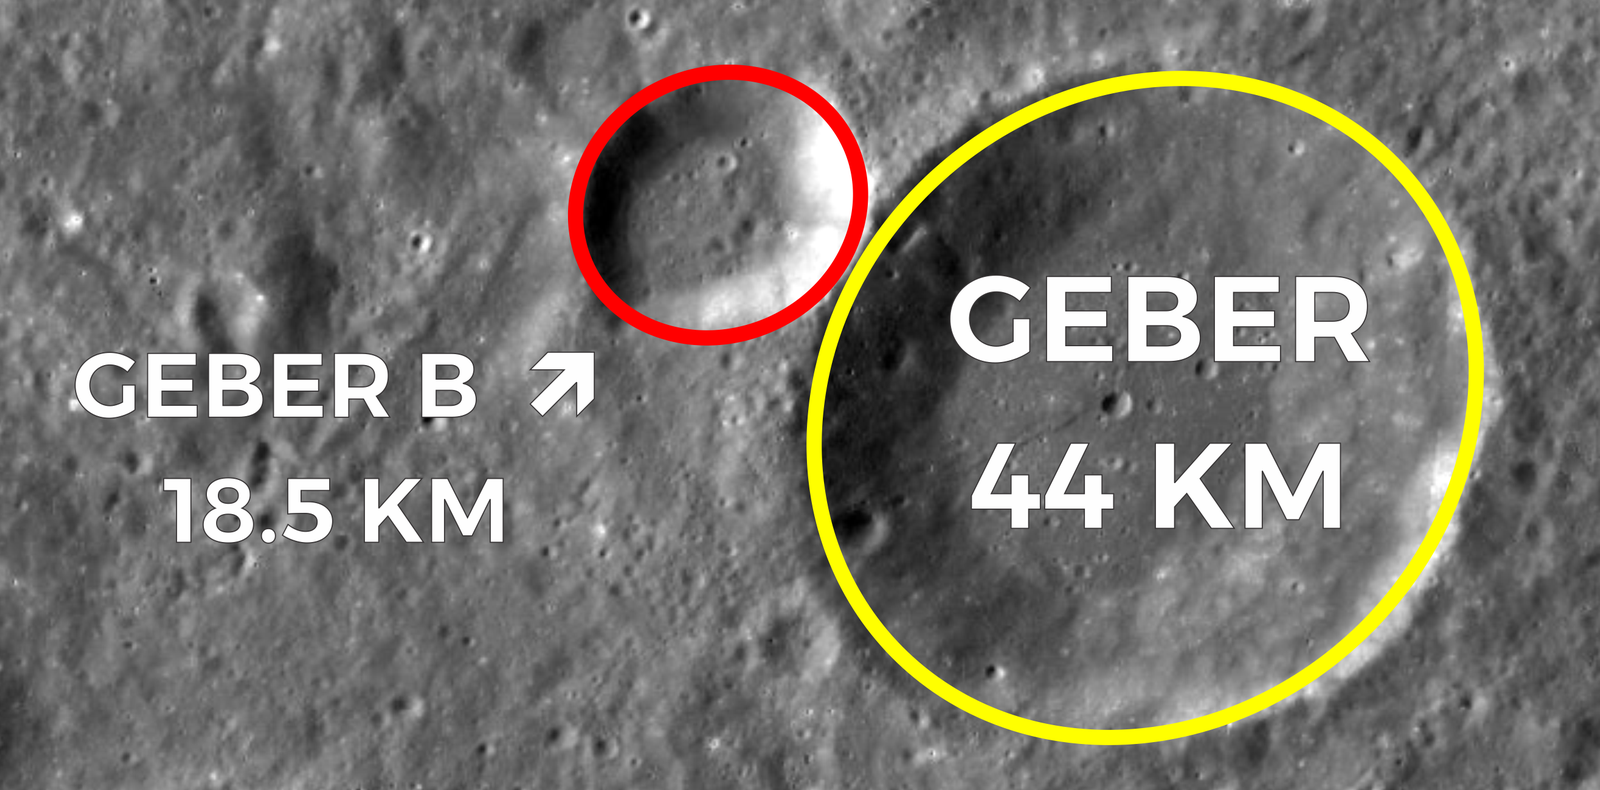 Crater Size Comparison (Image)